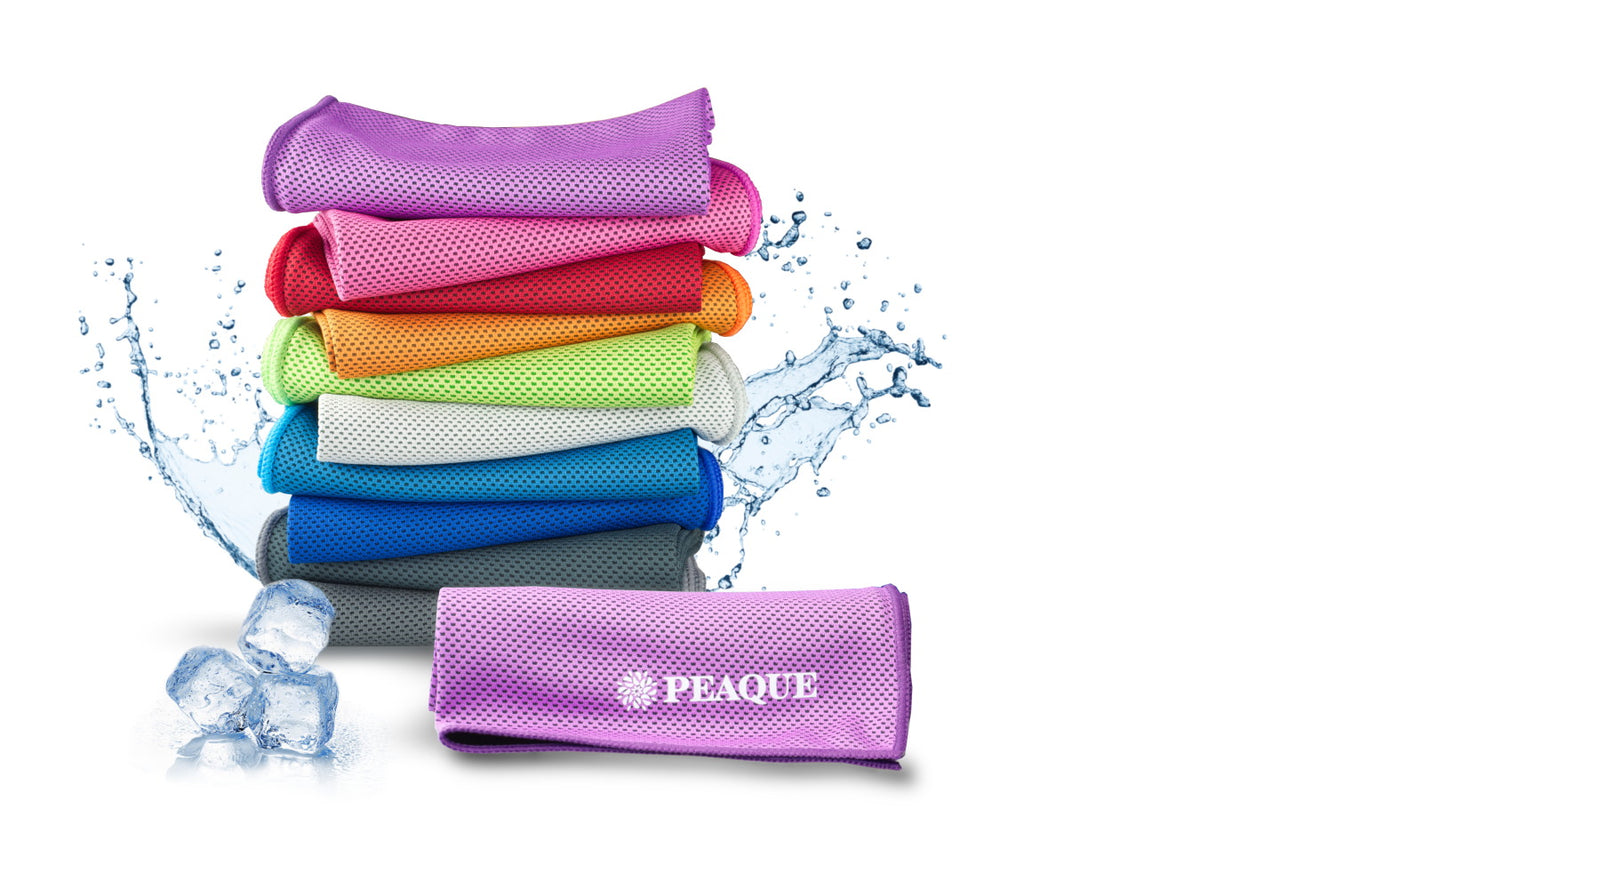 PEAQUE - Reise- & Fitness-Handtücher aus Hightech-Mikrofaser